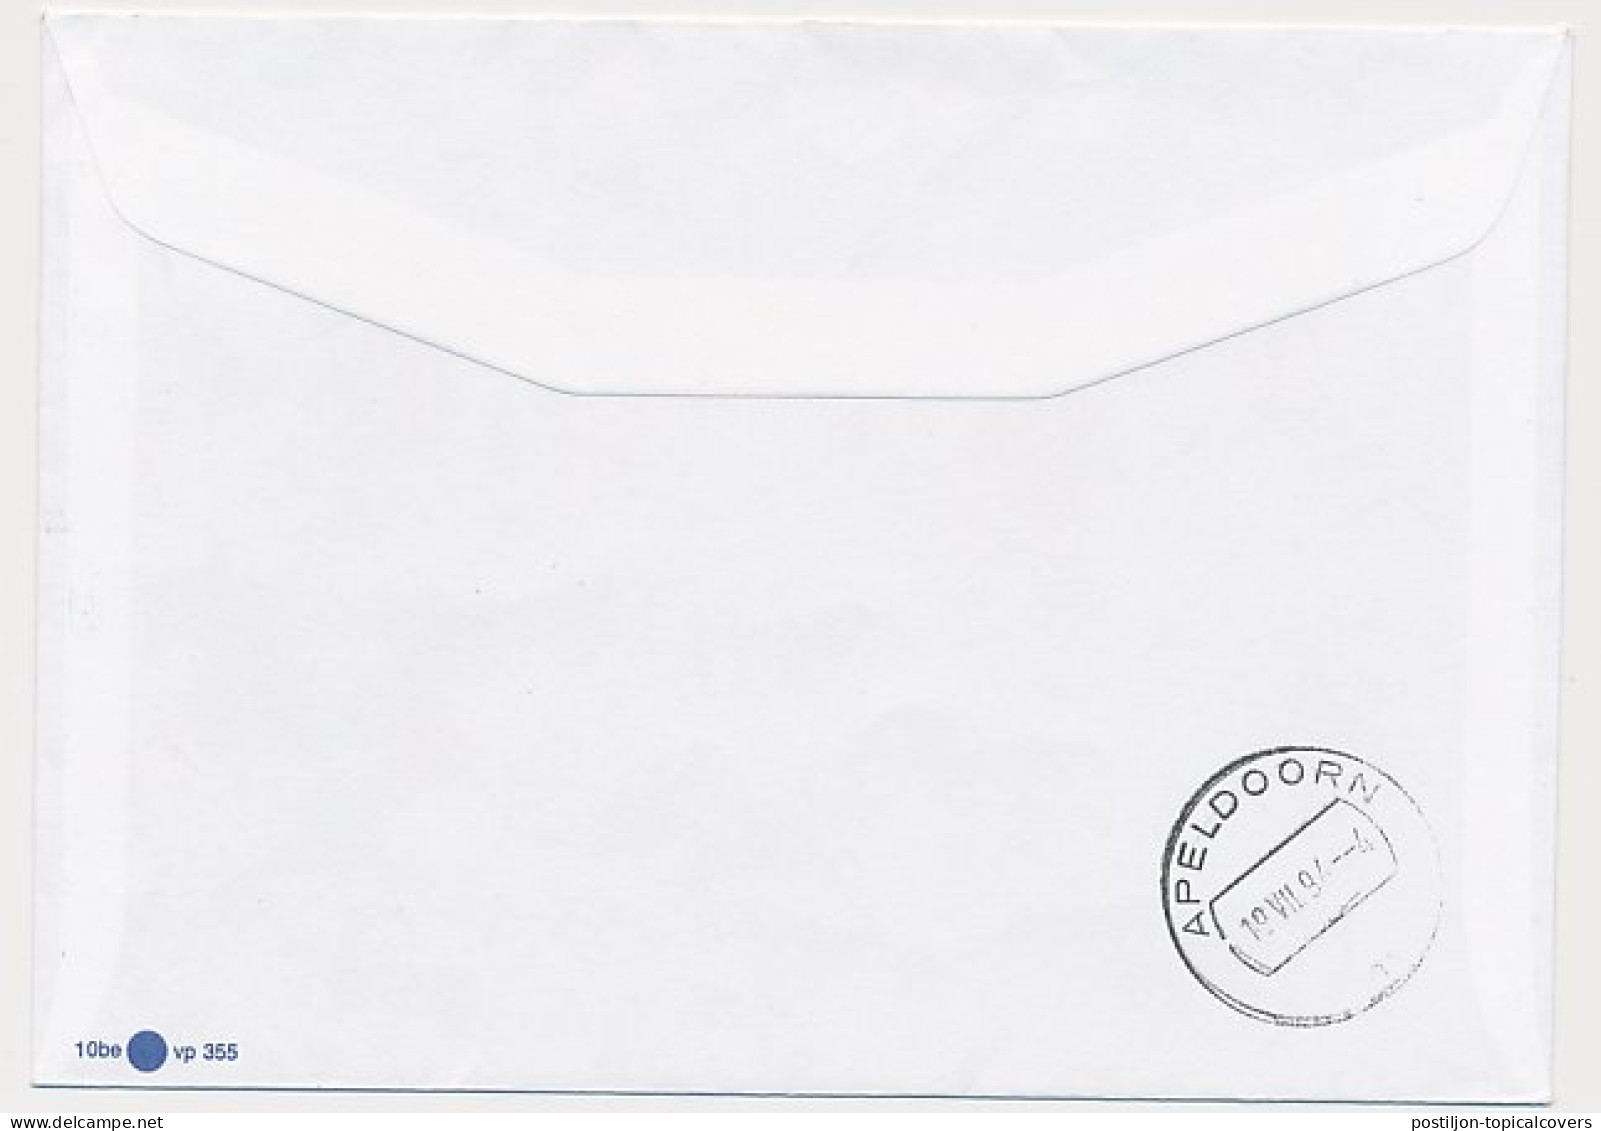 Rijdend Postkantoor Mini Postagentschap Roosendaal / Schijf 1994 - Ohne Zuordnung